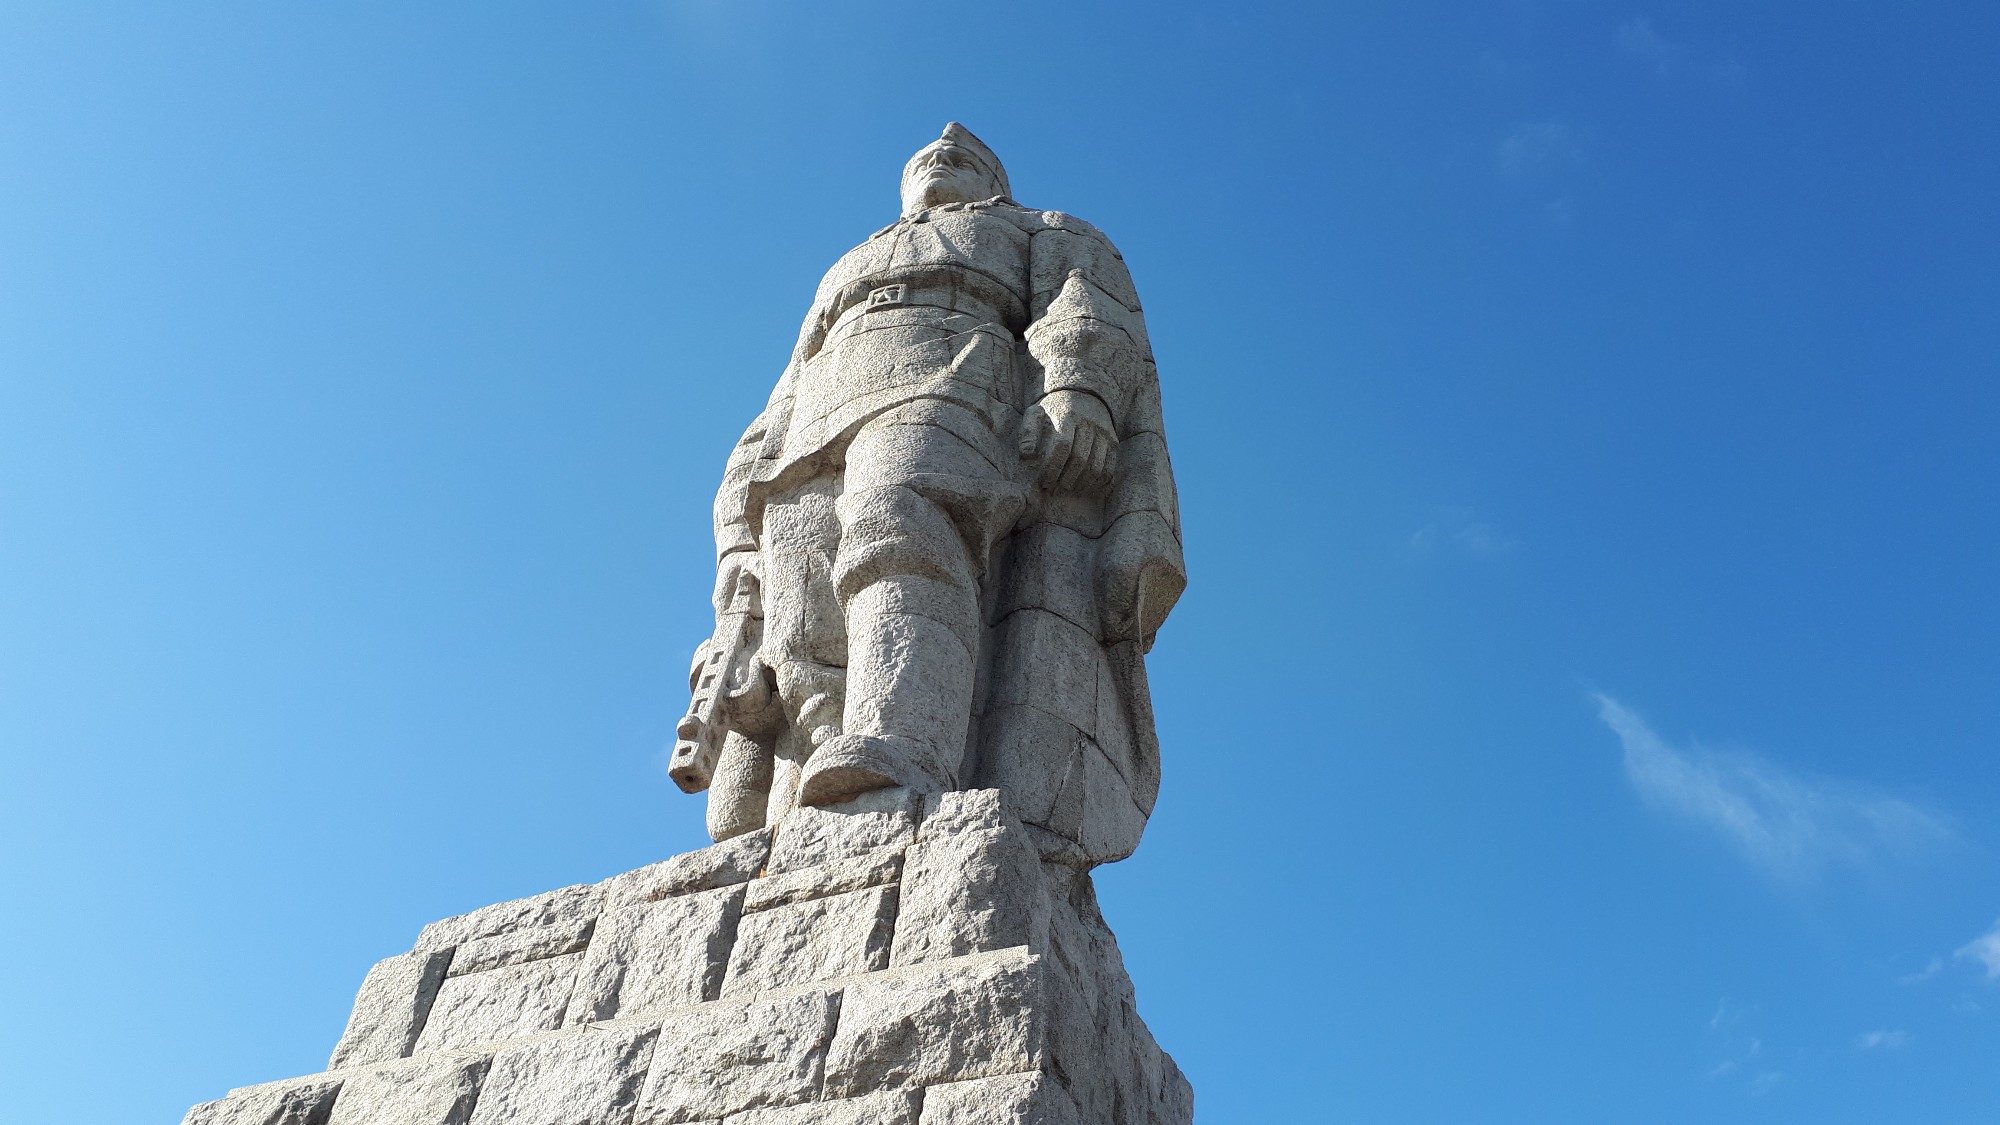 Памятник алеше в болгарии фото крупным планом